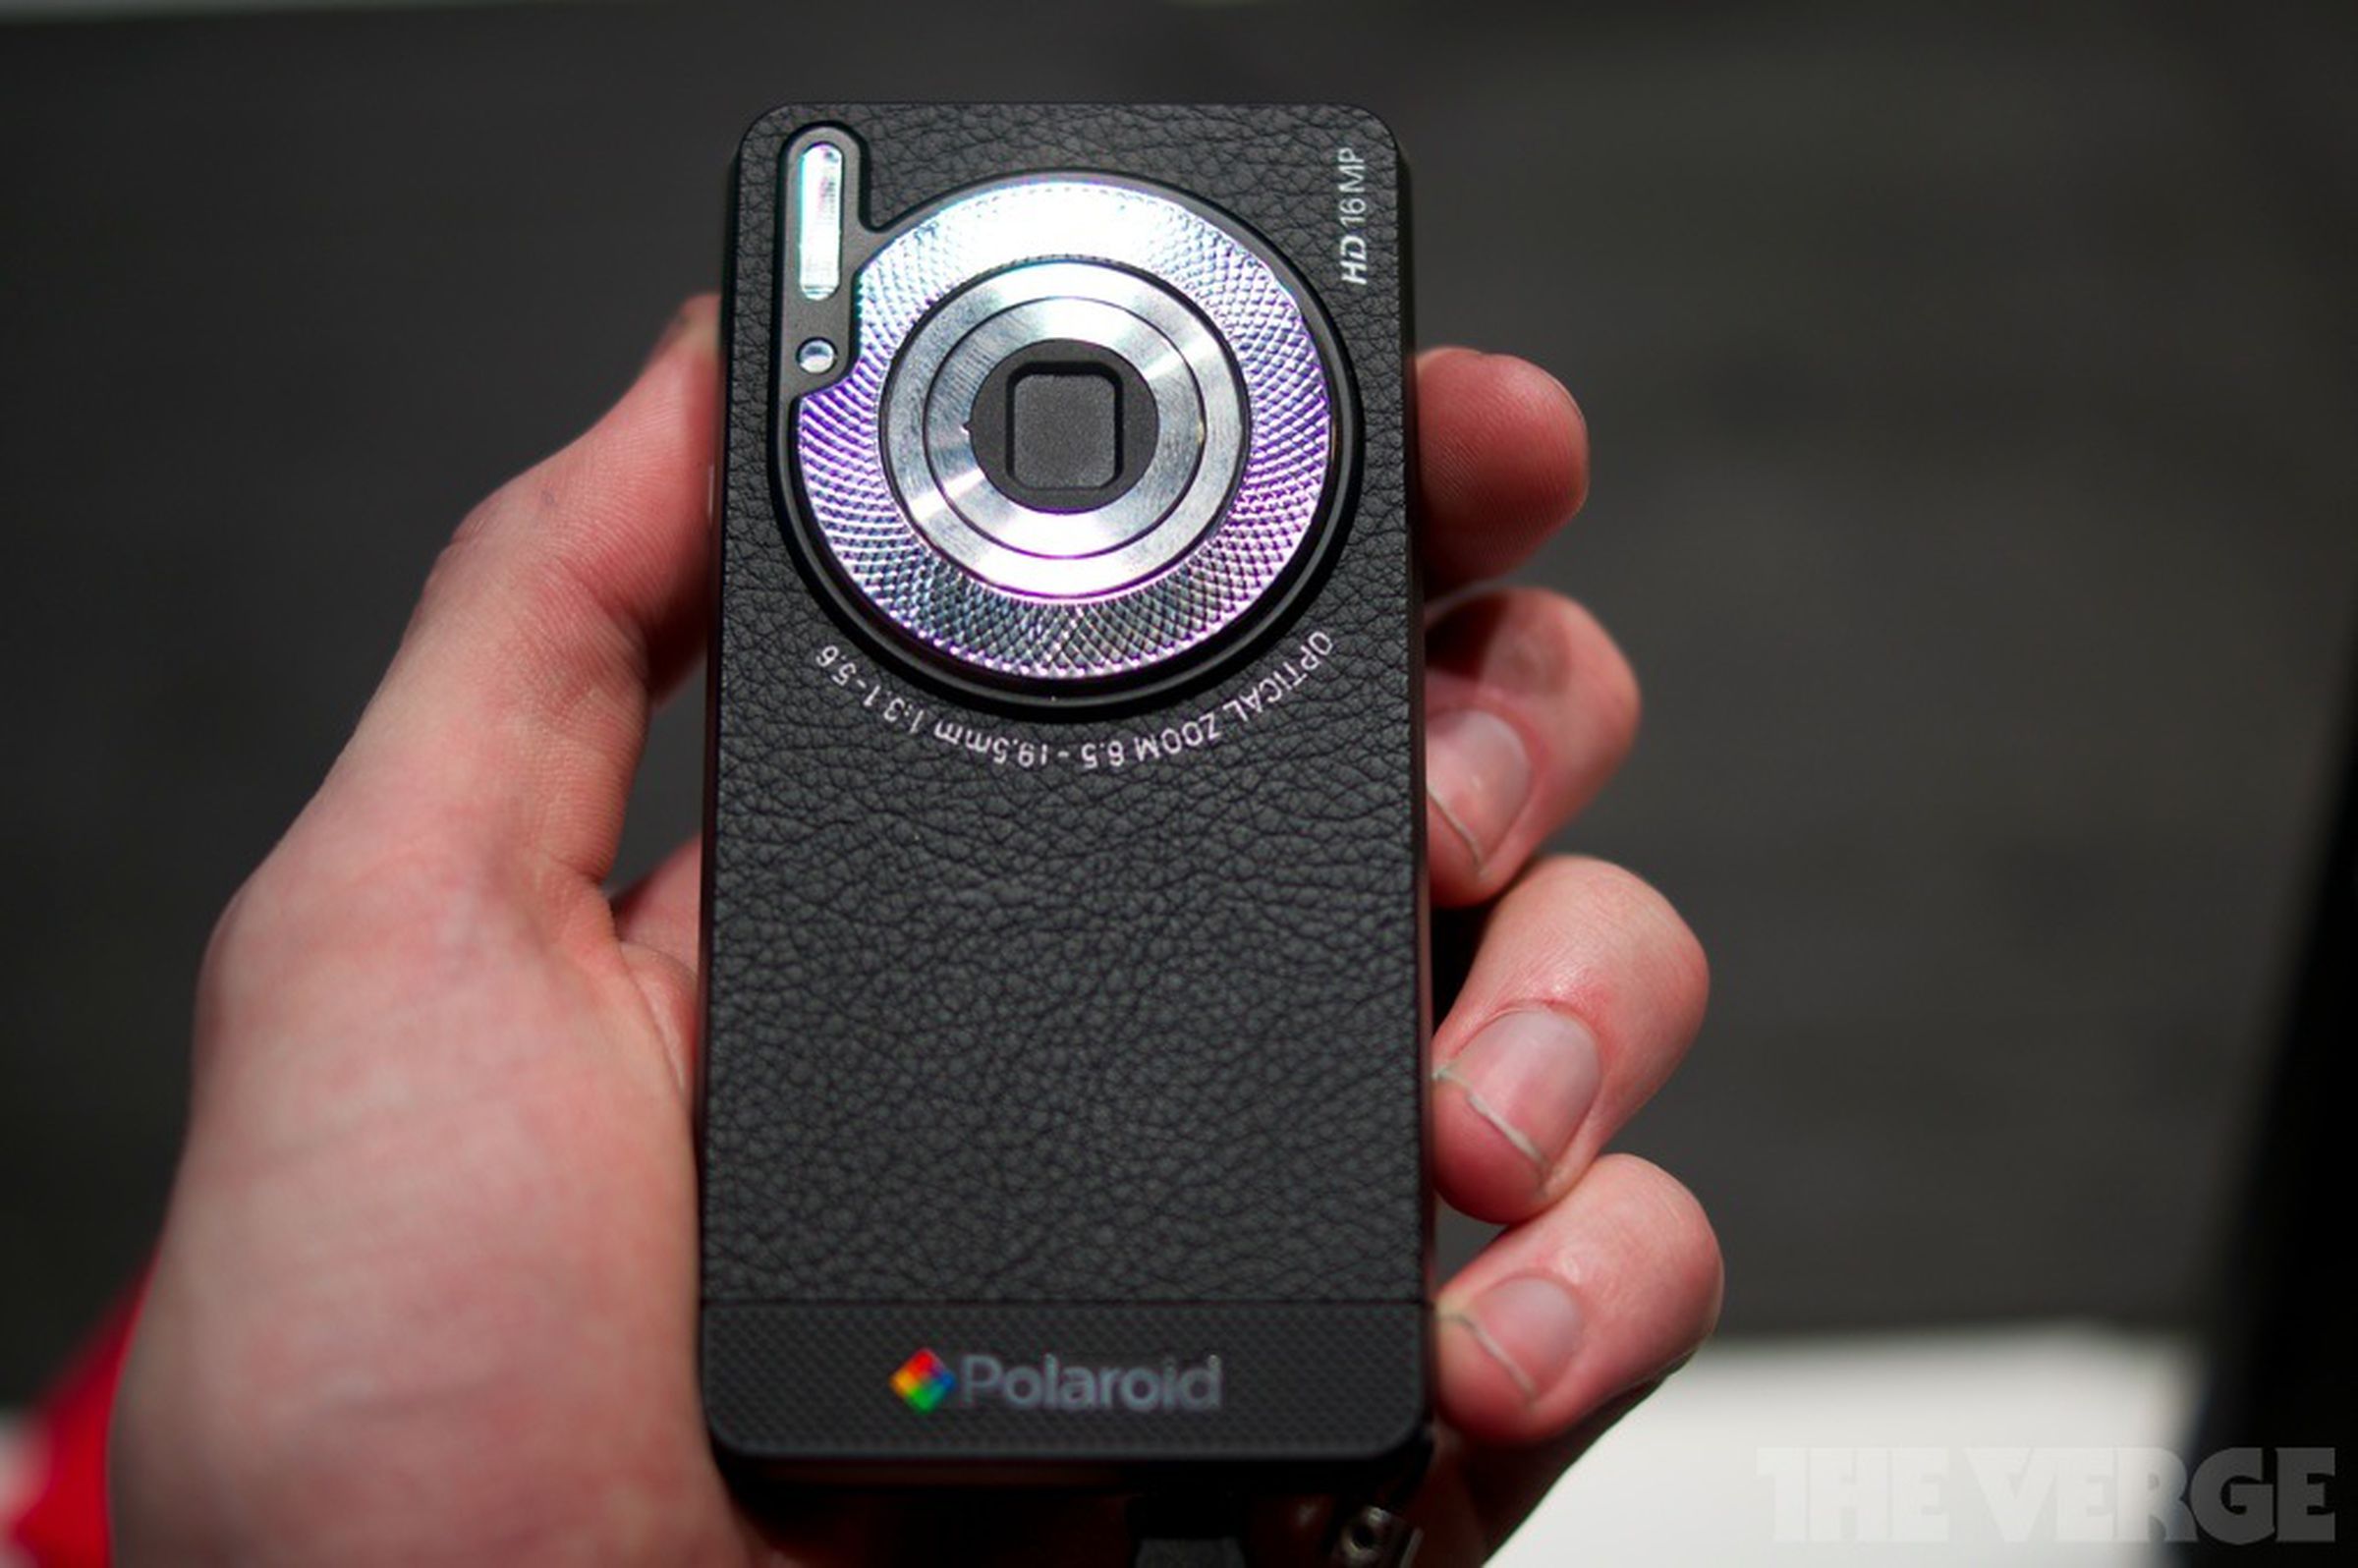 Polaroid SC1630 Smart Camera photos